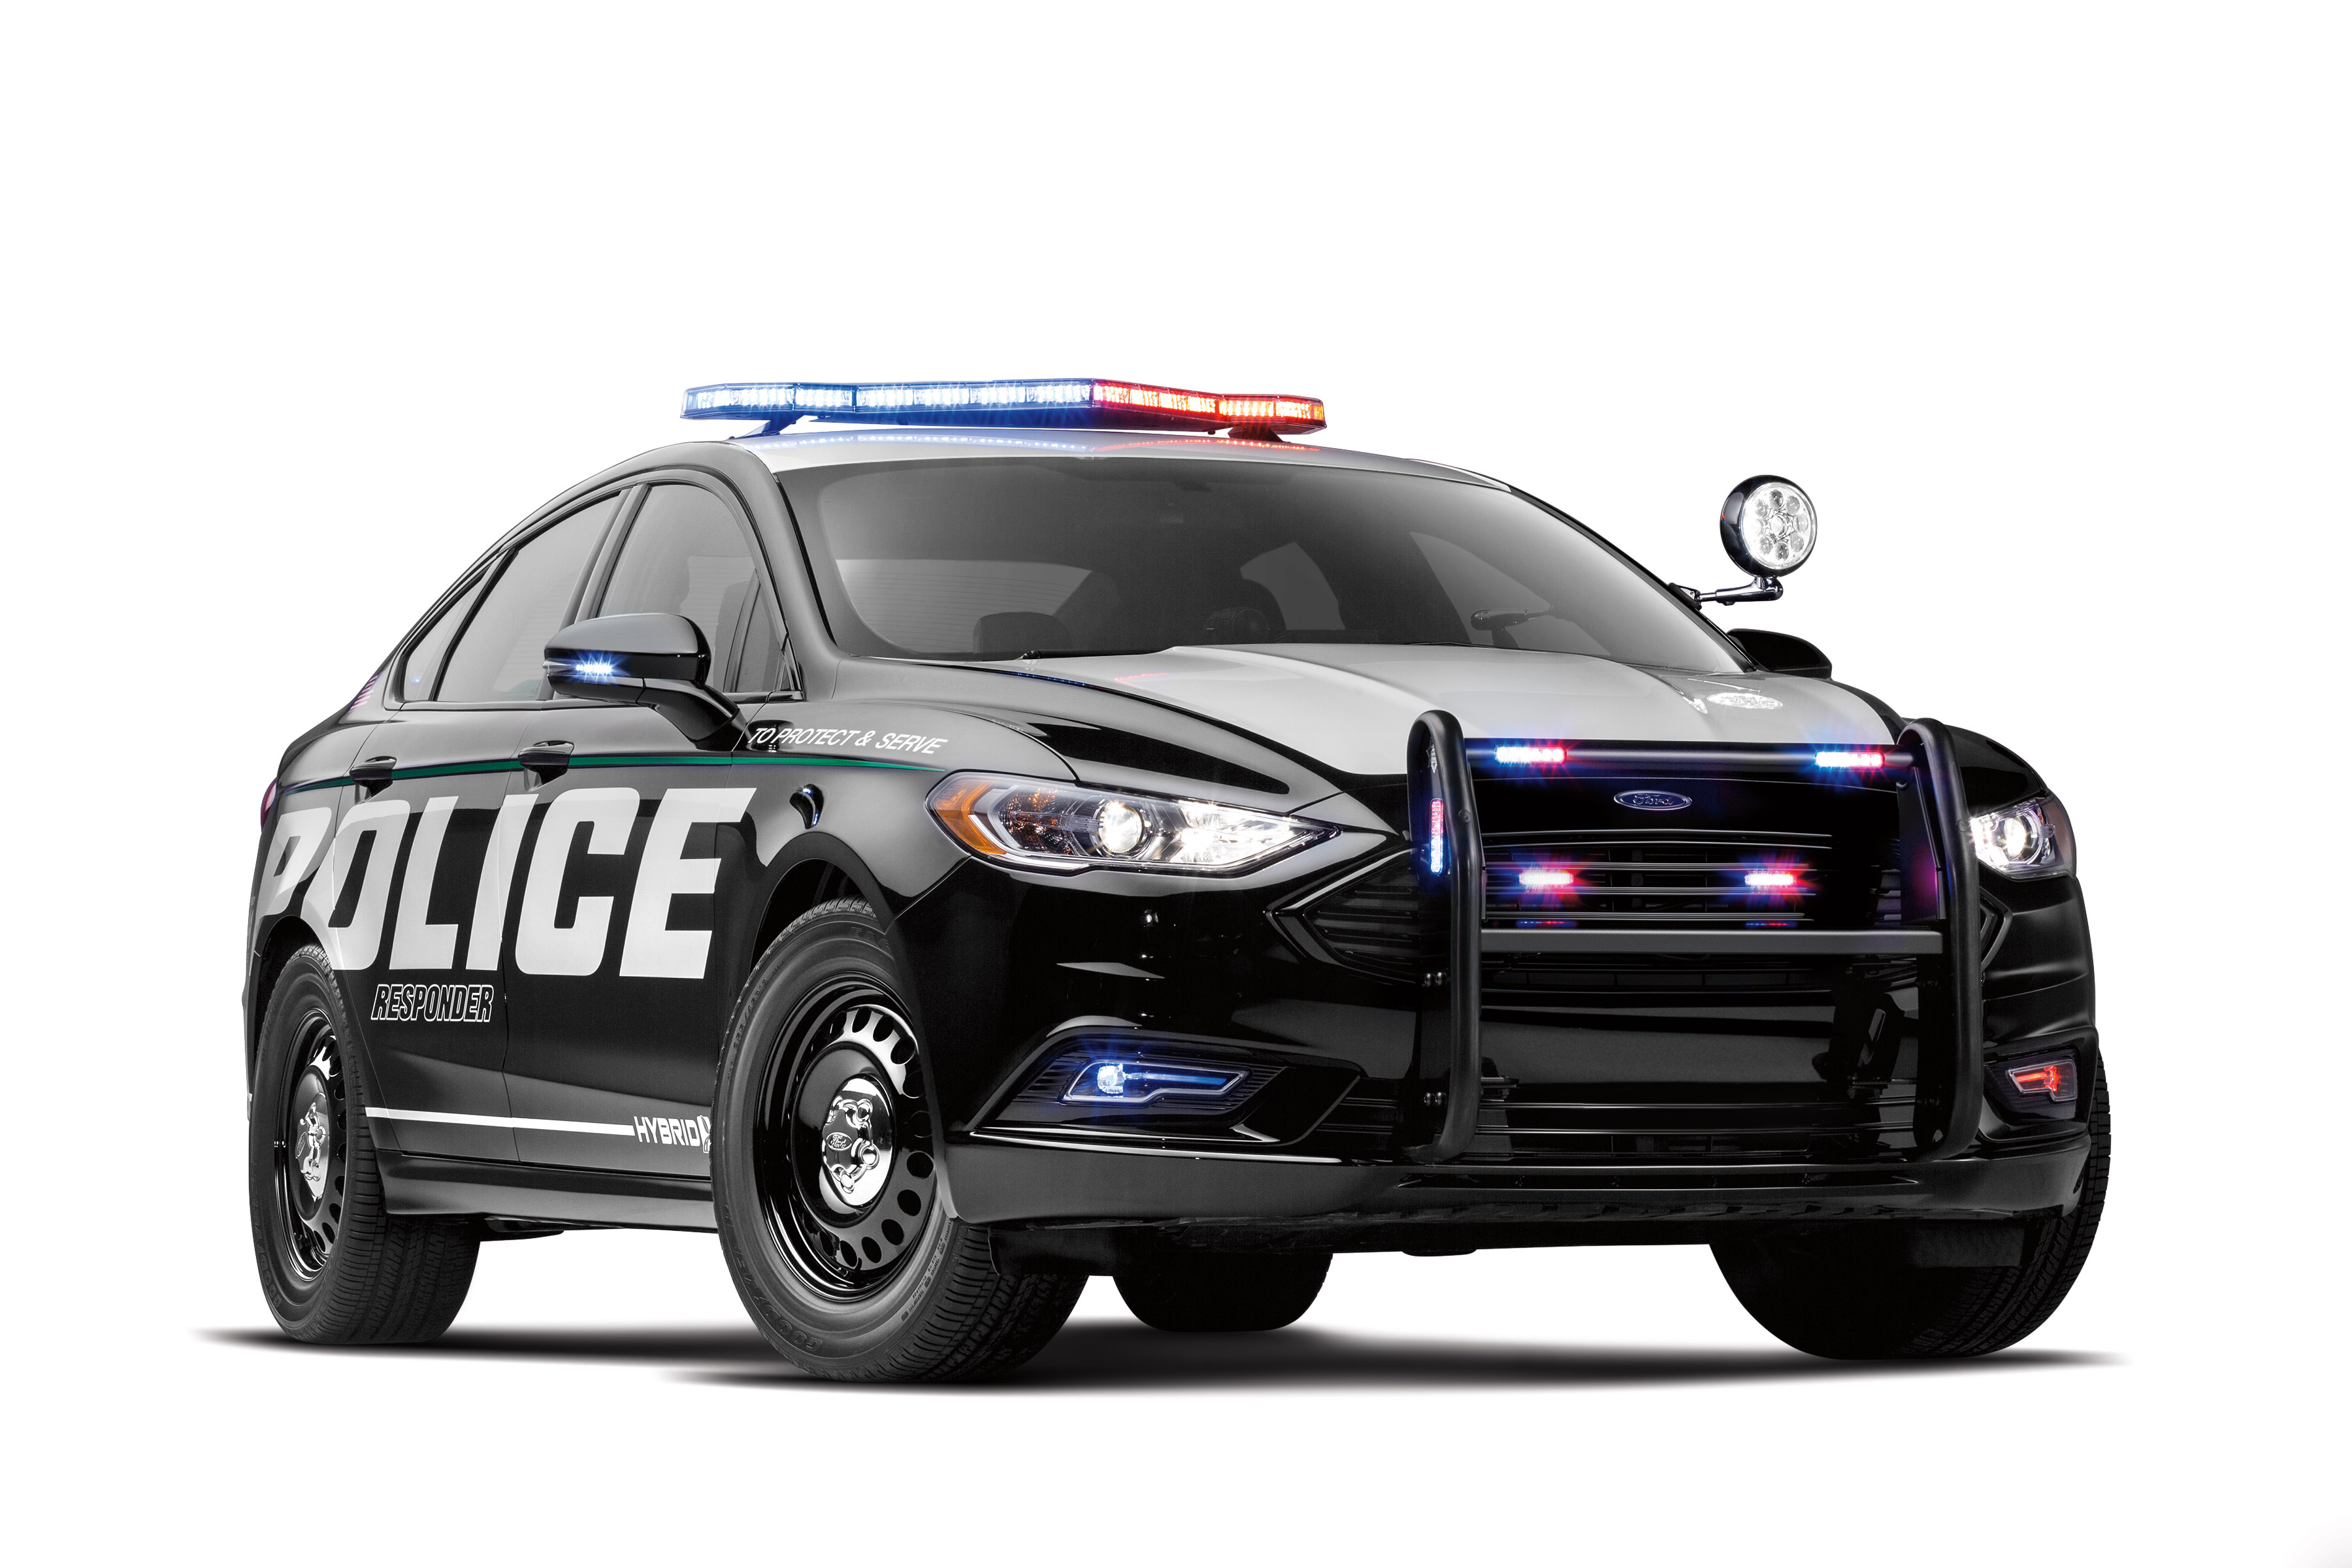 Открой полицейскую машину. Ford Police Interceptor sedan. Форд Police Interceptor седан. Ford Police Interceptor sedan 2010. Ford Fusion Interceptor.